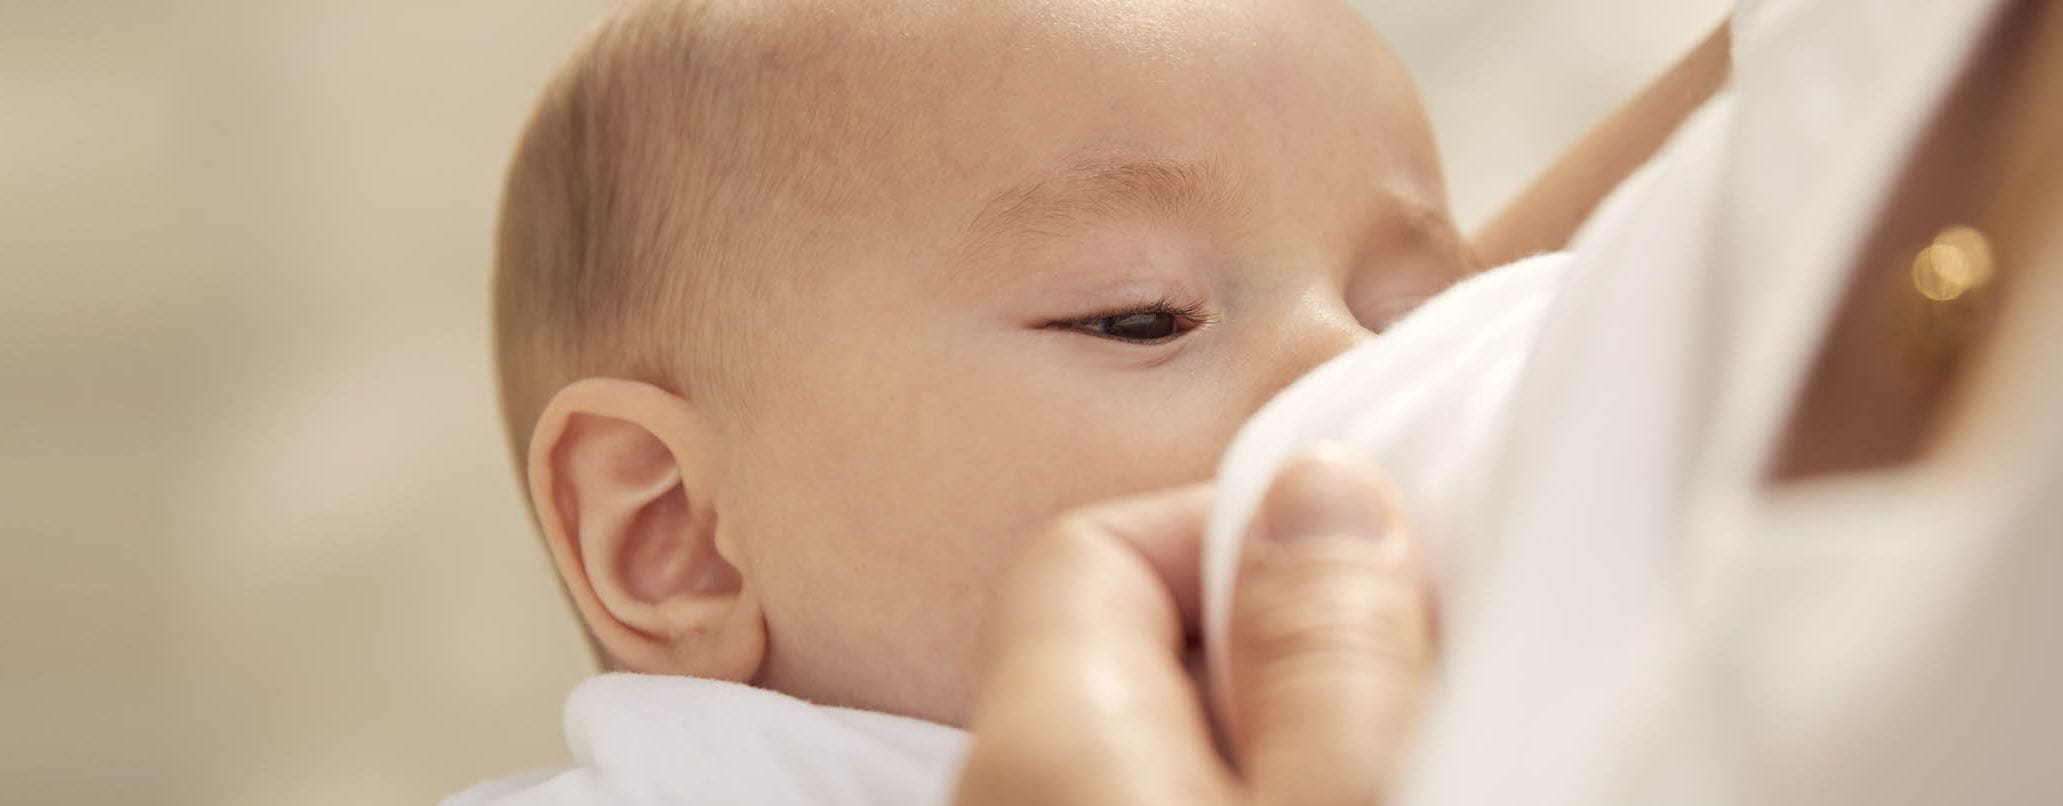 Baby stillen: Vom ersten Anlegen bis zum Zufüttern